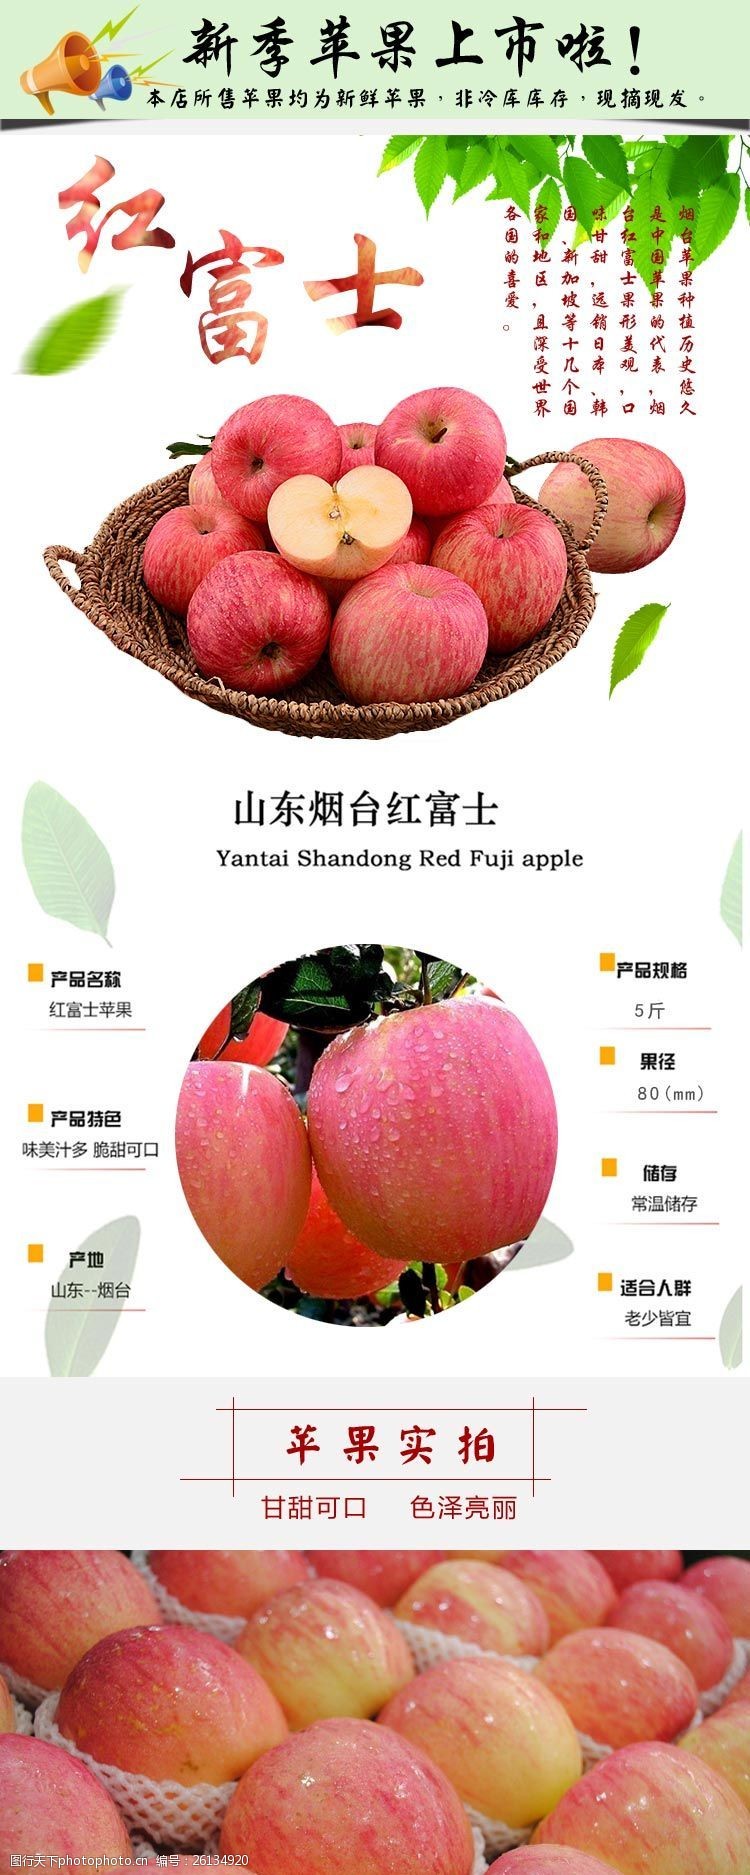 红苹果烟台红富士苹果详情页